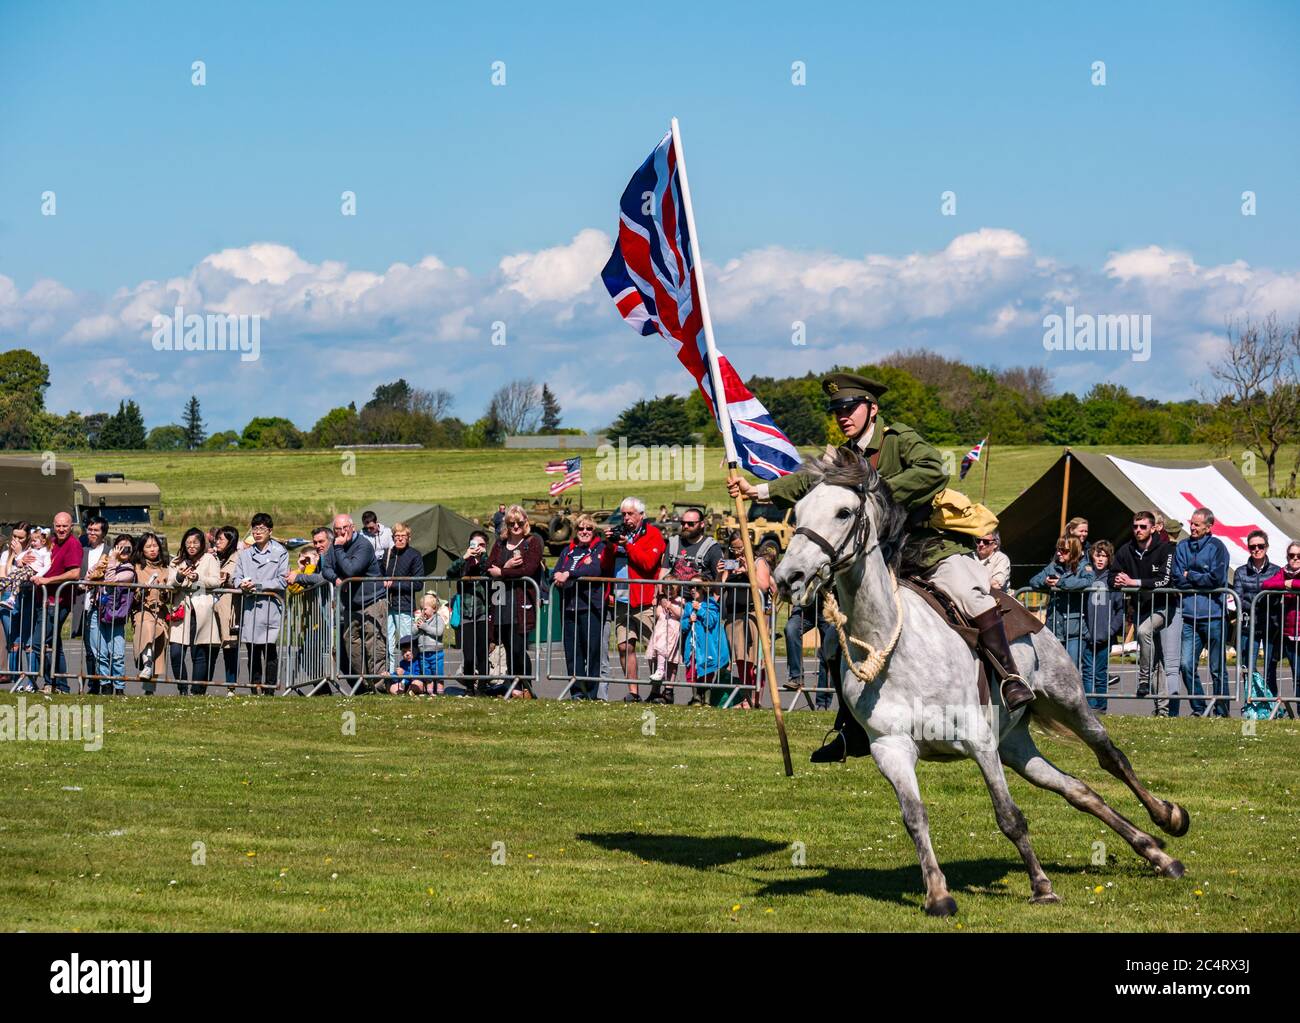 Les amis d'Onno équipe de cascades équestres avec un soldat à cheval portant un grand drapeau de l'Union Jack, événement de guerre, Fortune est, Lothian est, Écosse Banque D'Images